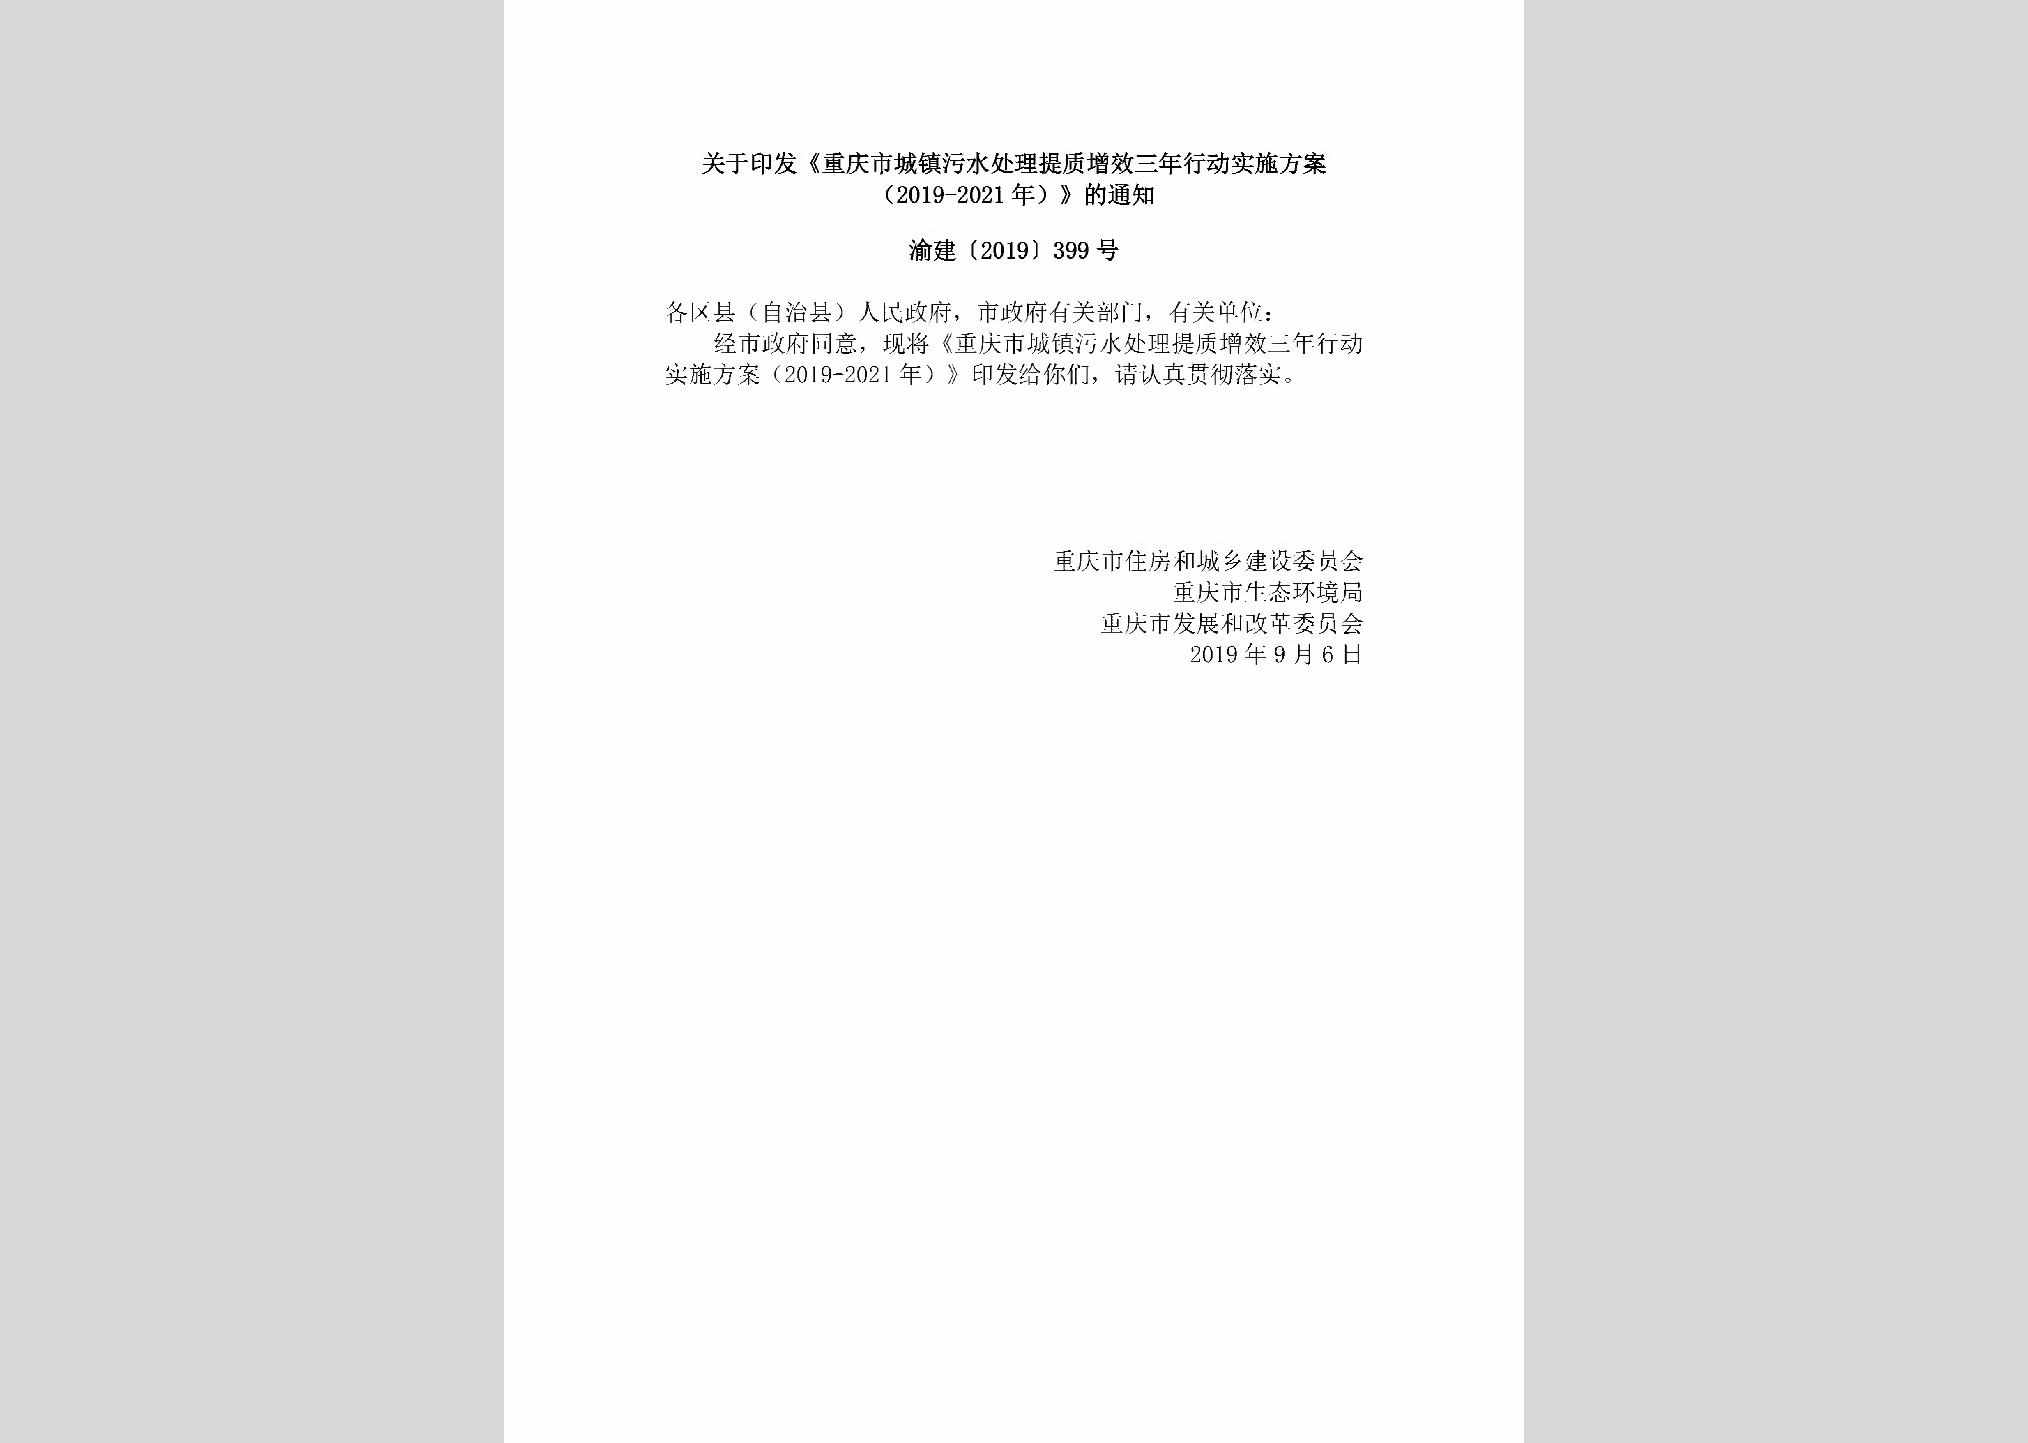 渝建[2019]399号：关于印发《重庆市城镇污水处理提质增效三年行动实施方案（2019-2021年）》的通知